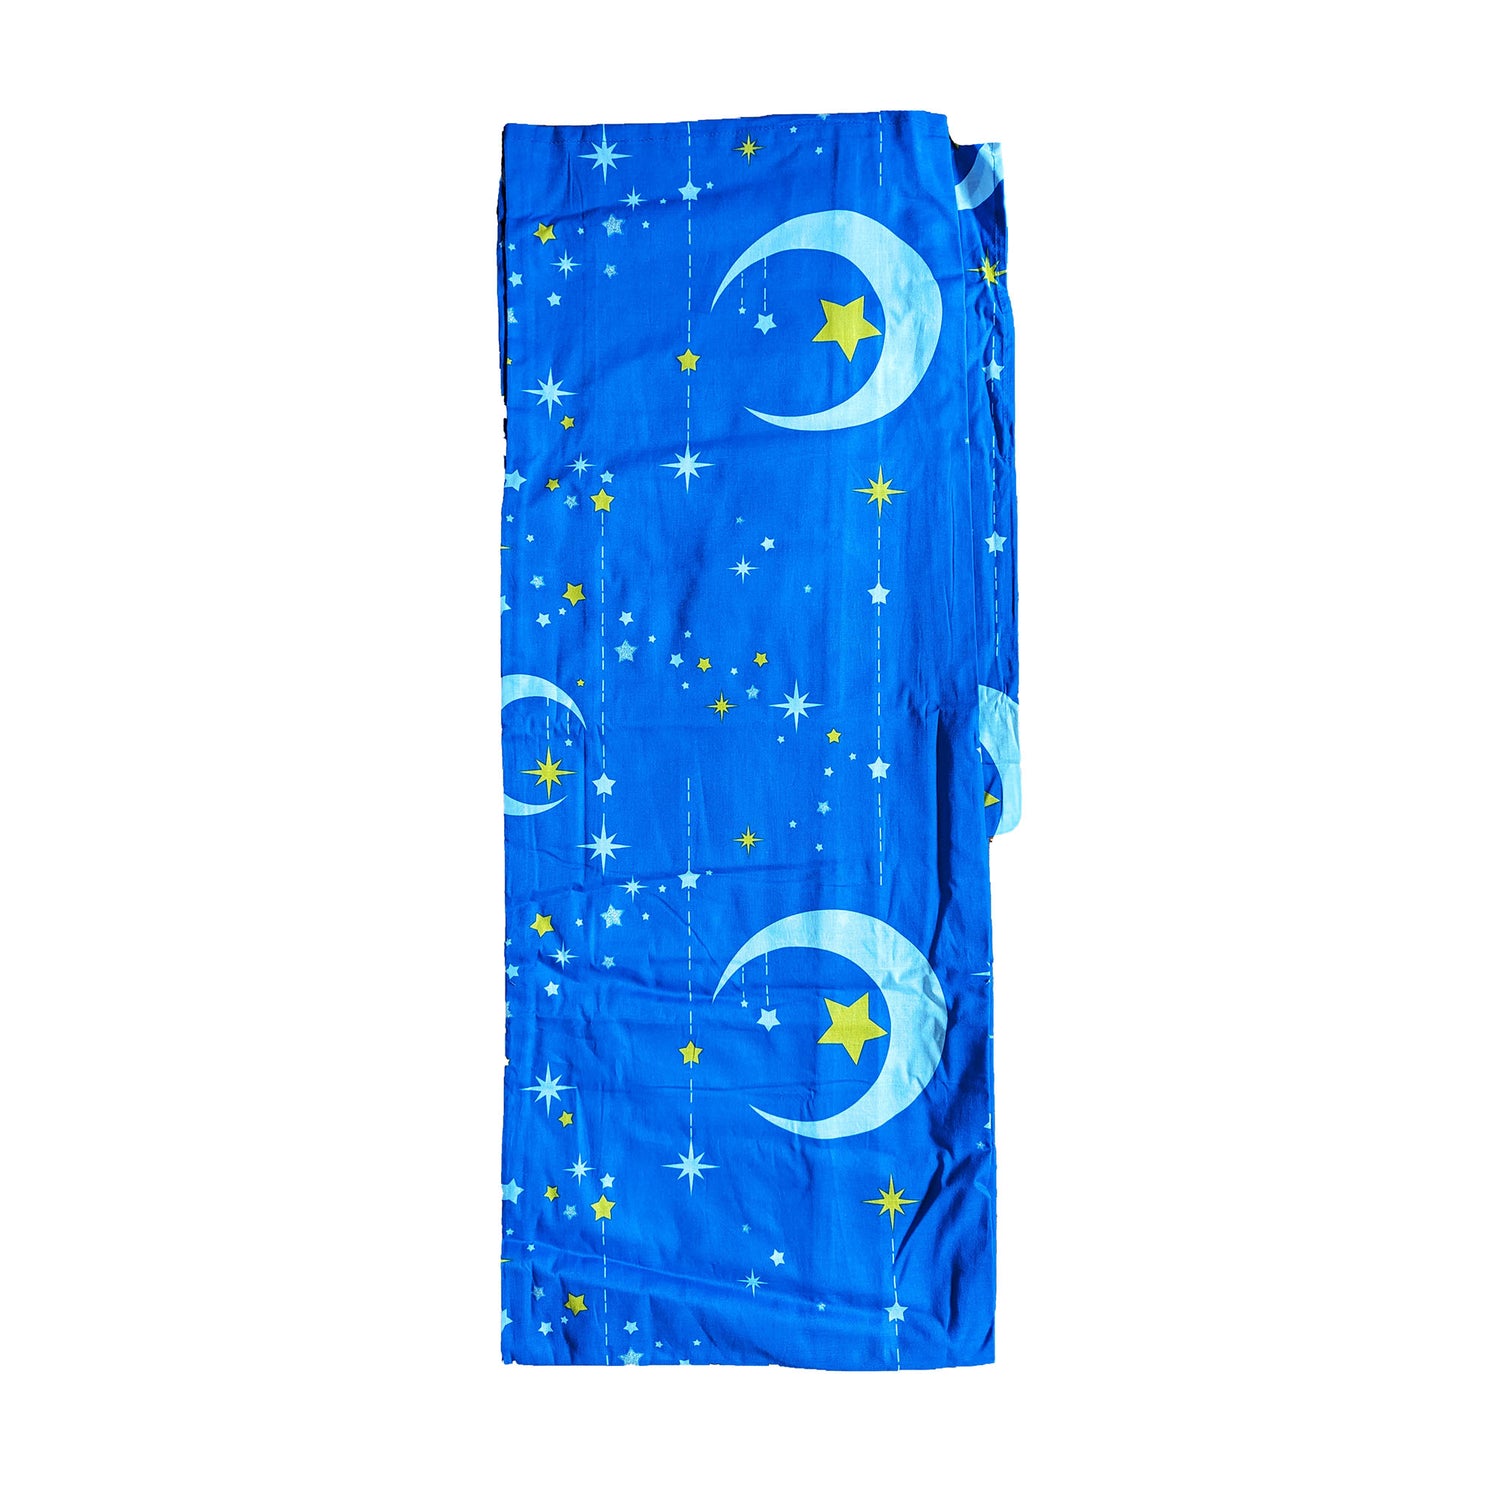 Japanese Yukata Kimono Plus Size - Whimsical Night Sky in Blue